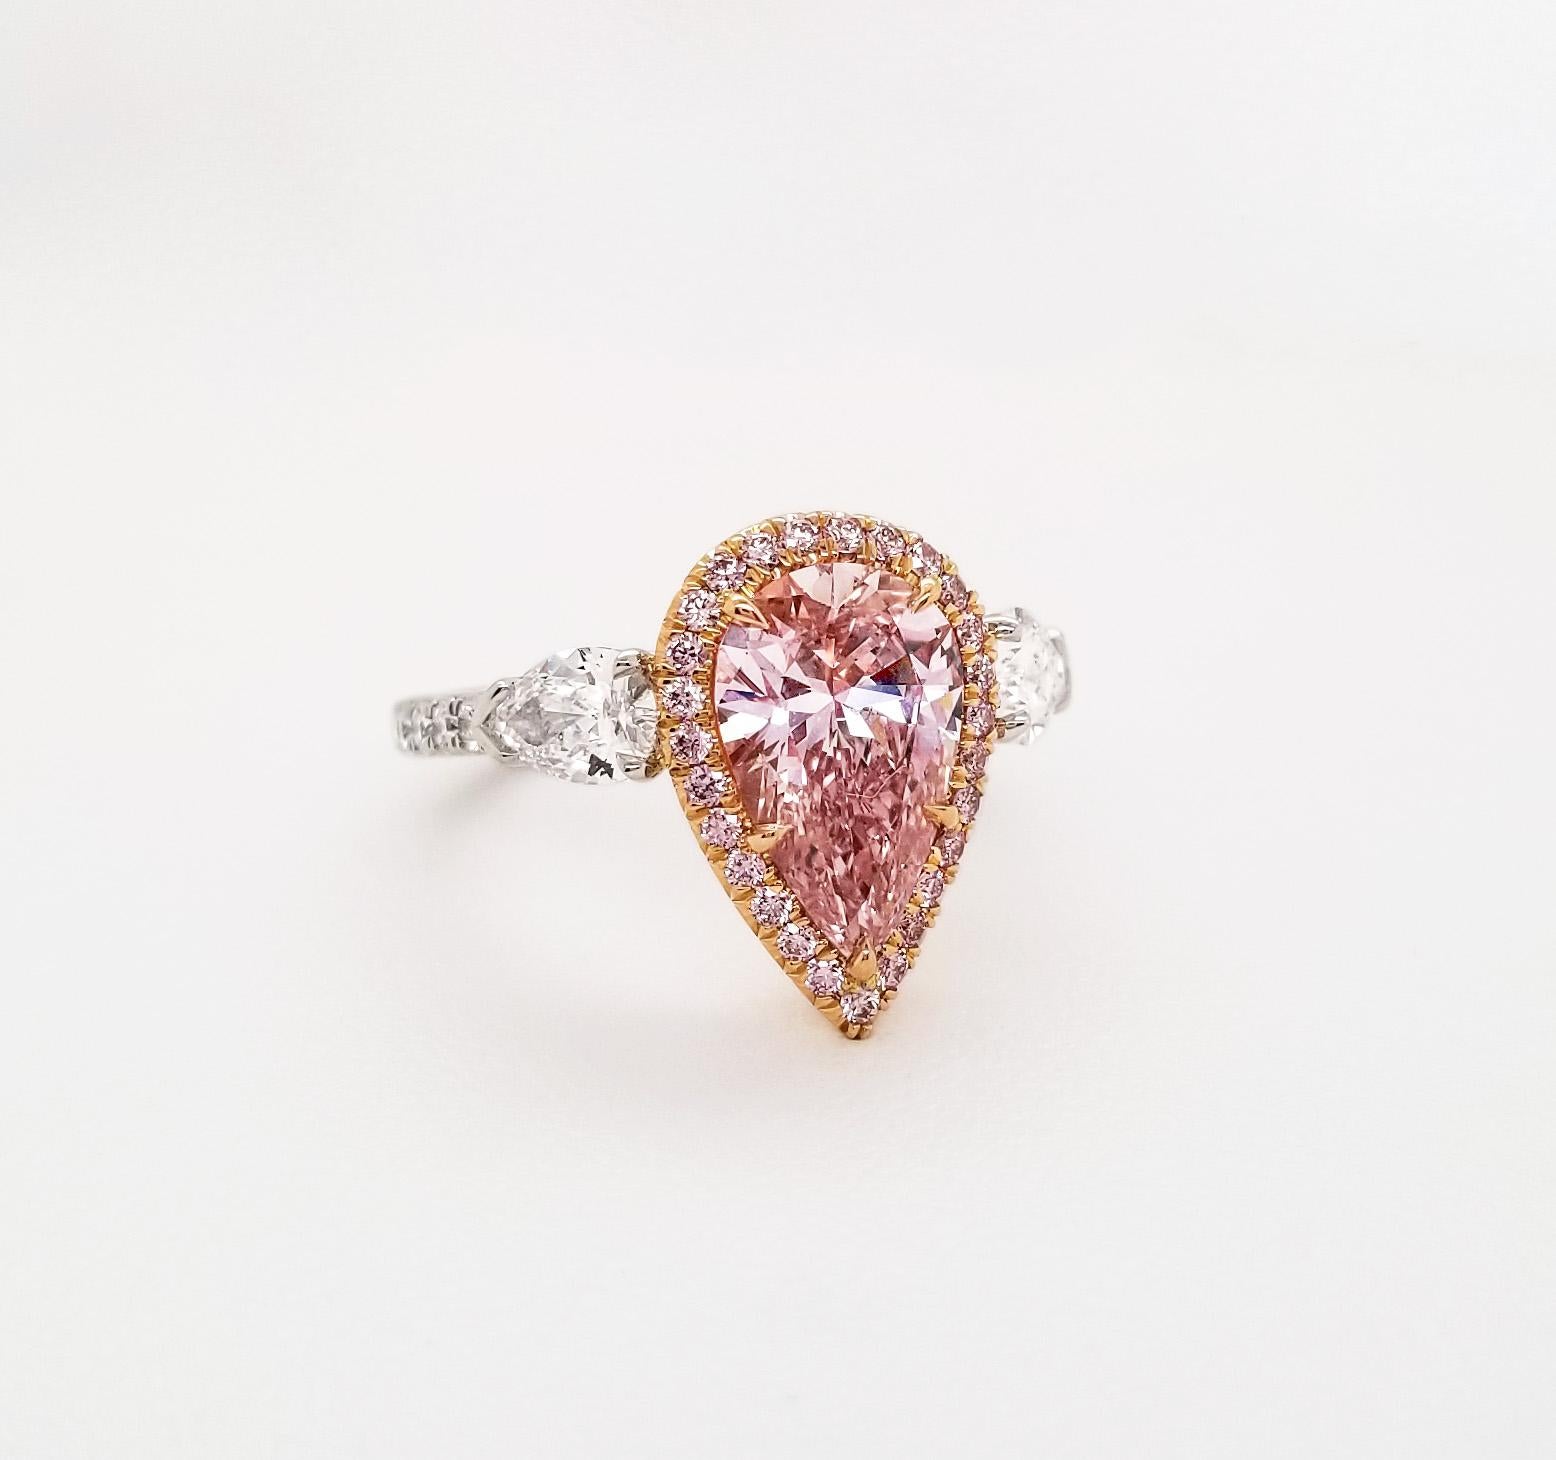 Von SCARSELLI, diese 2,01-Karat fancy rosa Birne Form Diamant GIA zertifiziert (siehe Zertifikat Bild für detaillierte Informationen Stein). Der zentrale Diamant, der durch einen runden rosafarbenen Brillanten von 0,23 Karat aufgewertet wird, wird